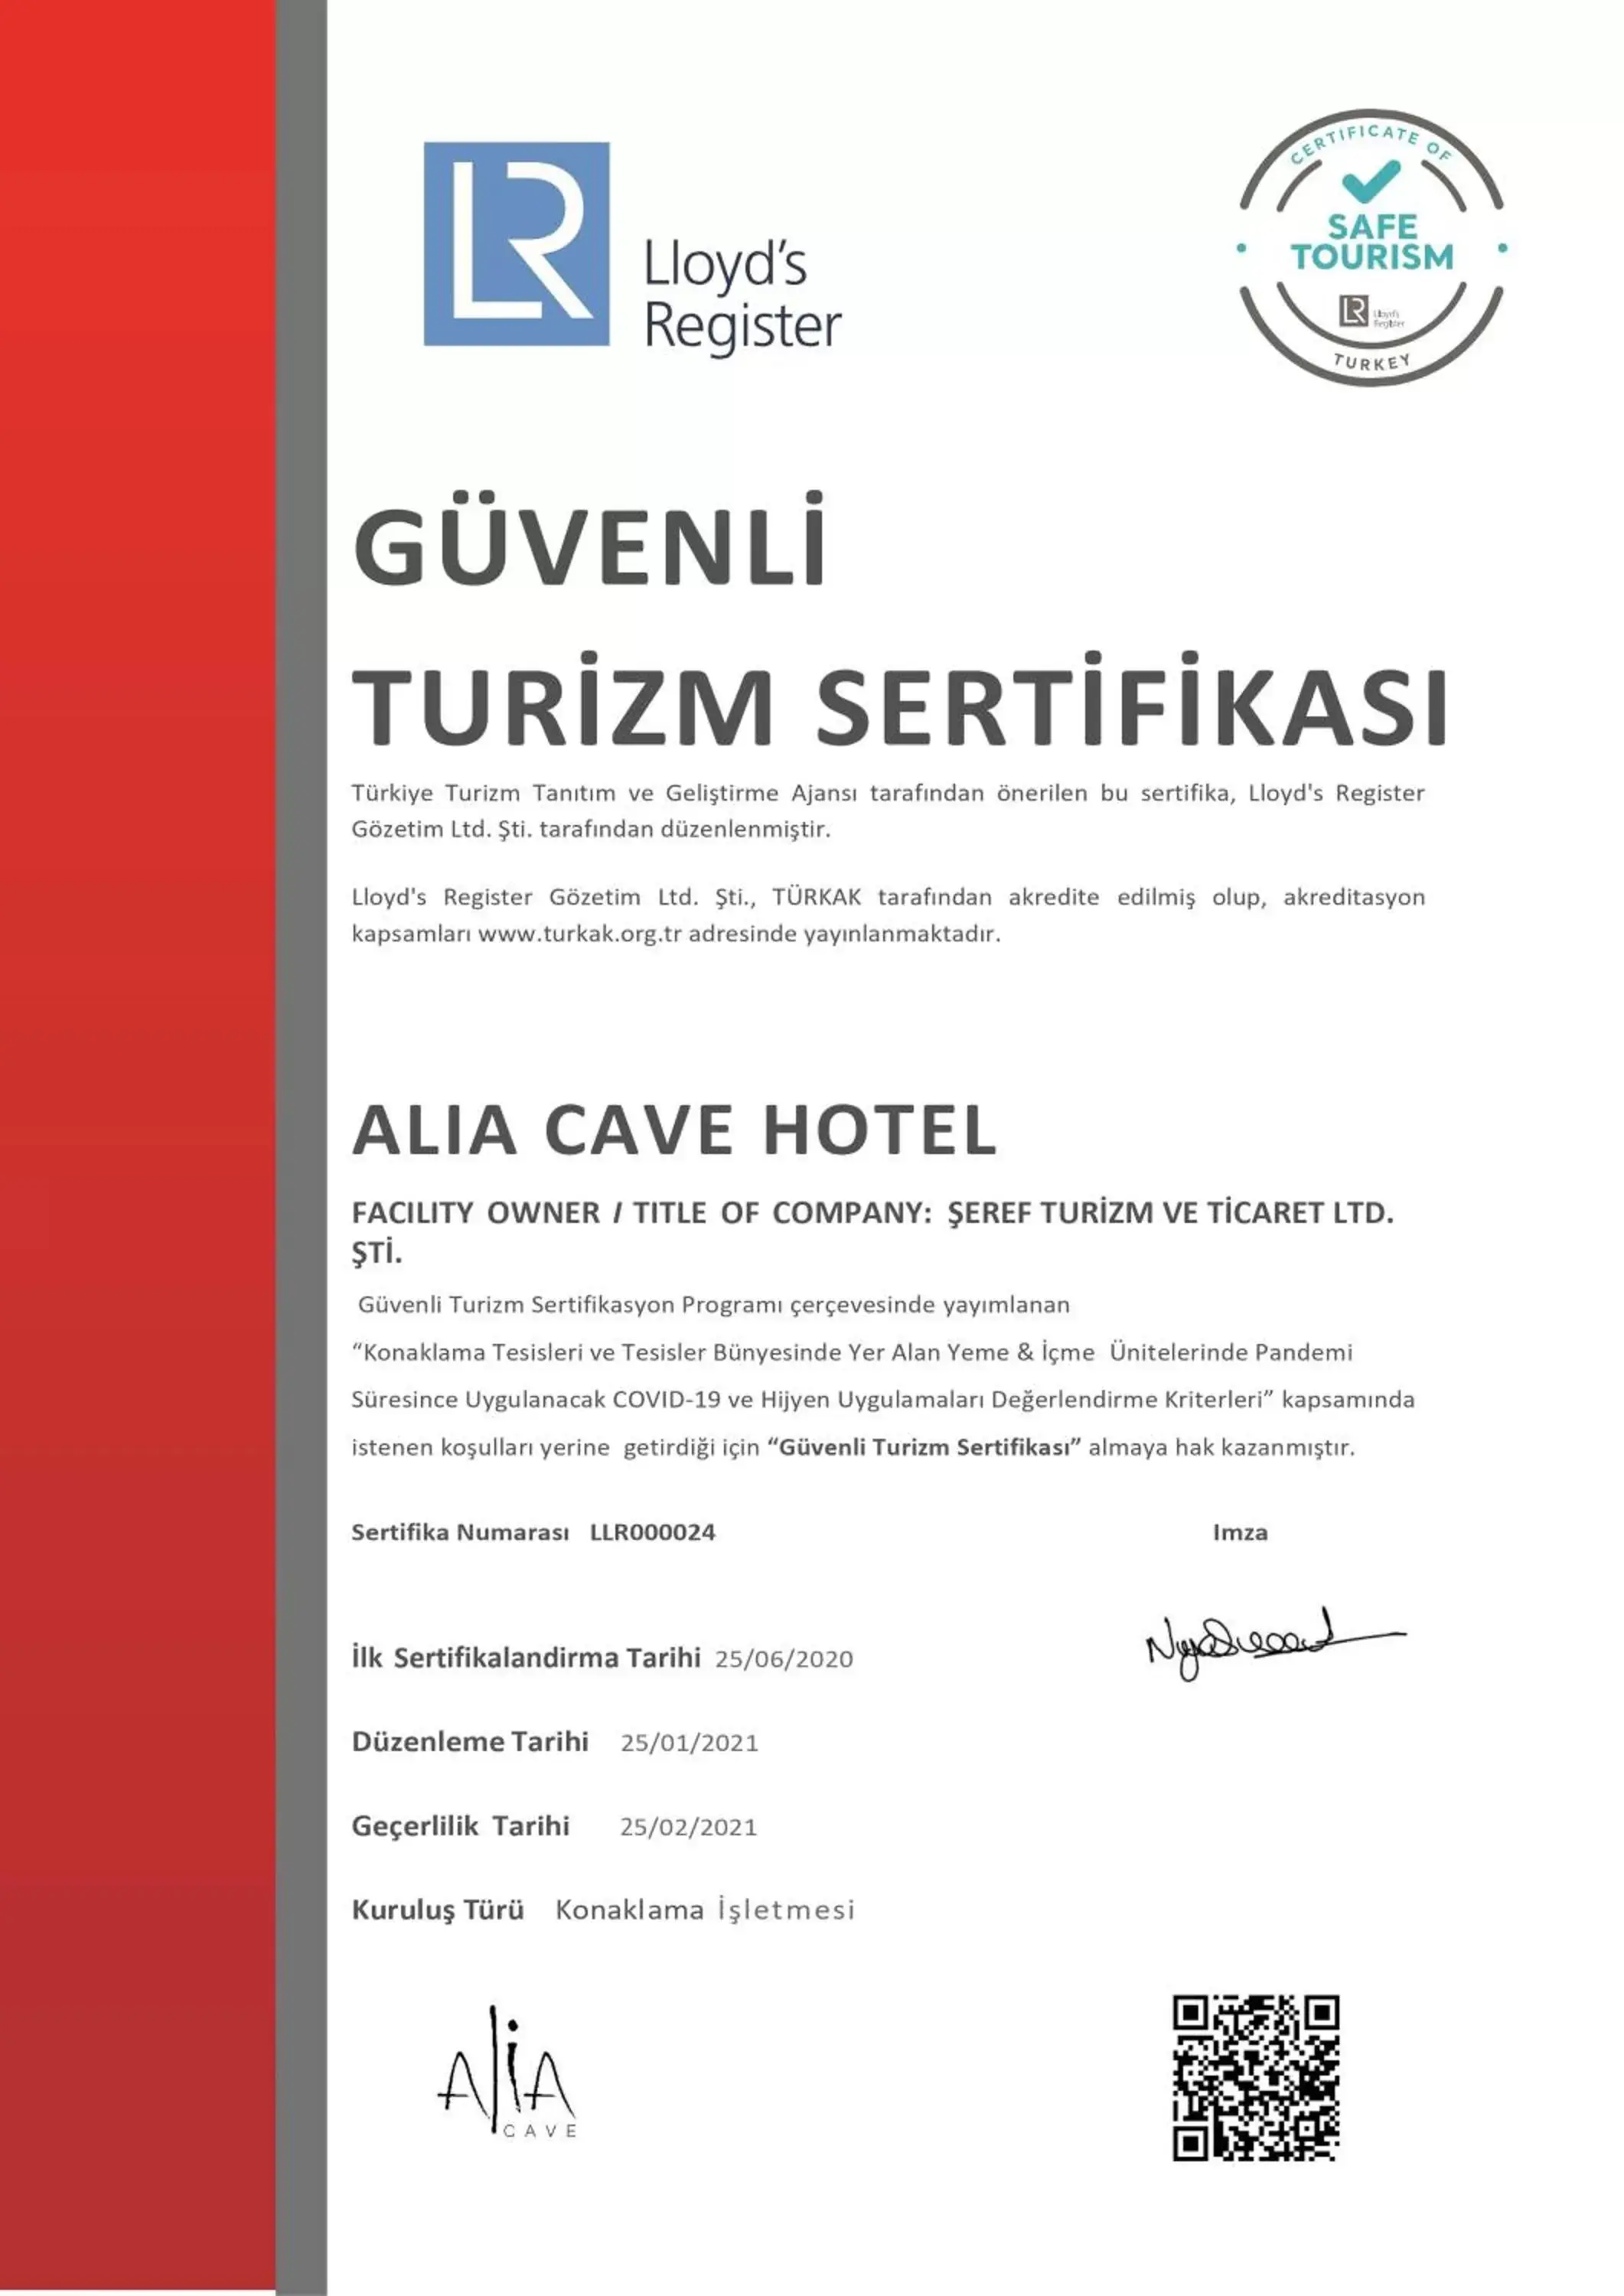 Logo/Certificate/Sign in Alia Cave Hotel